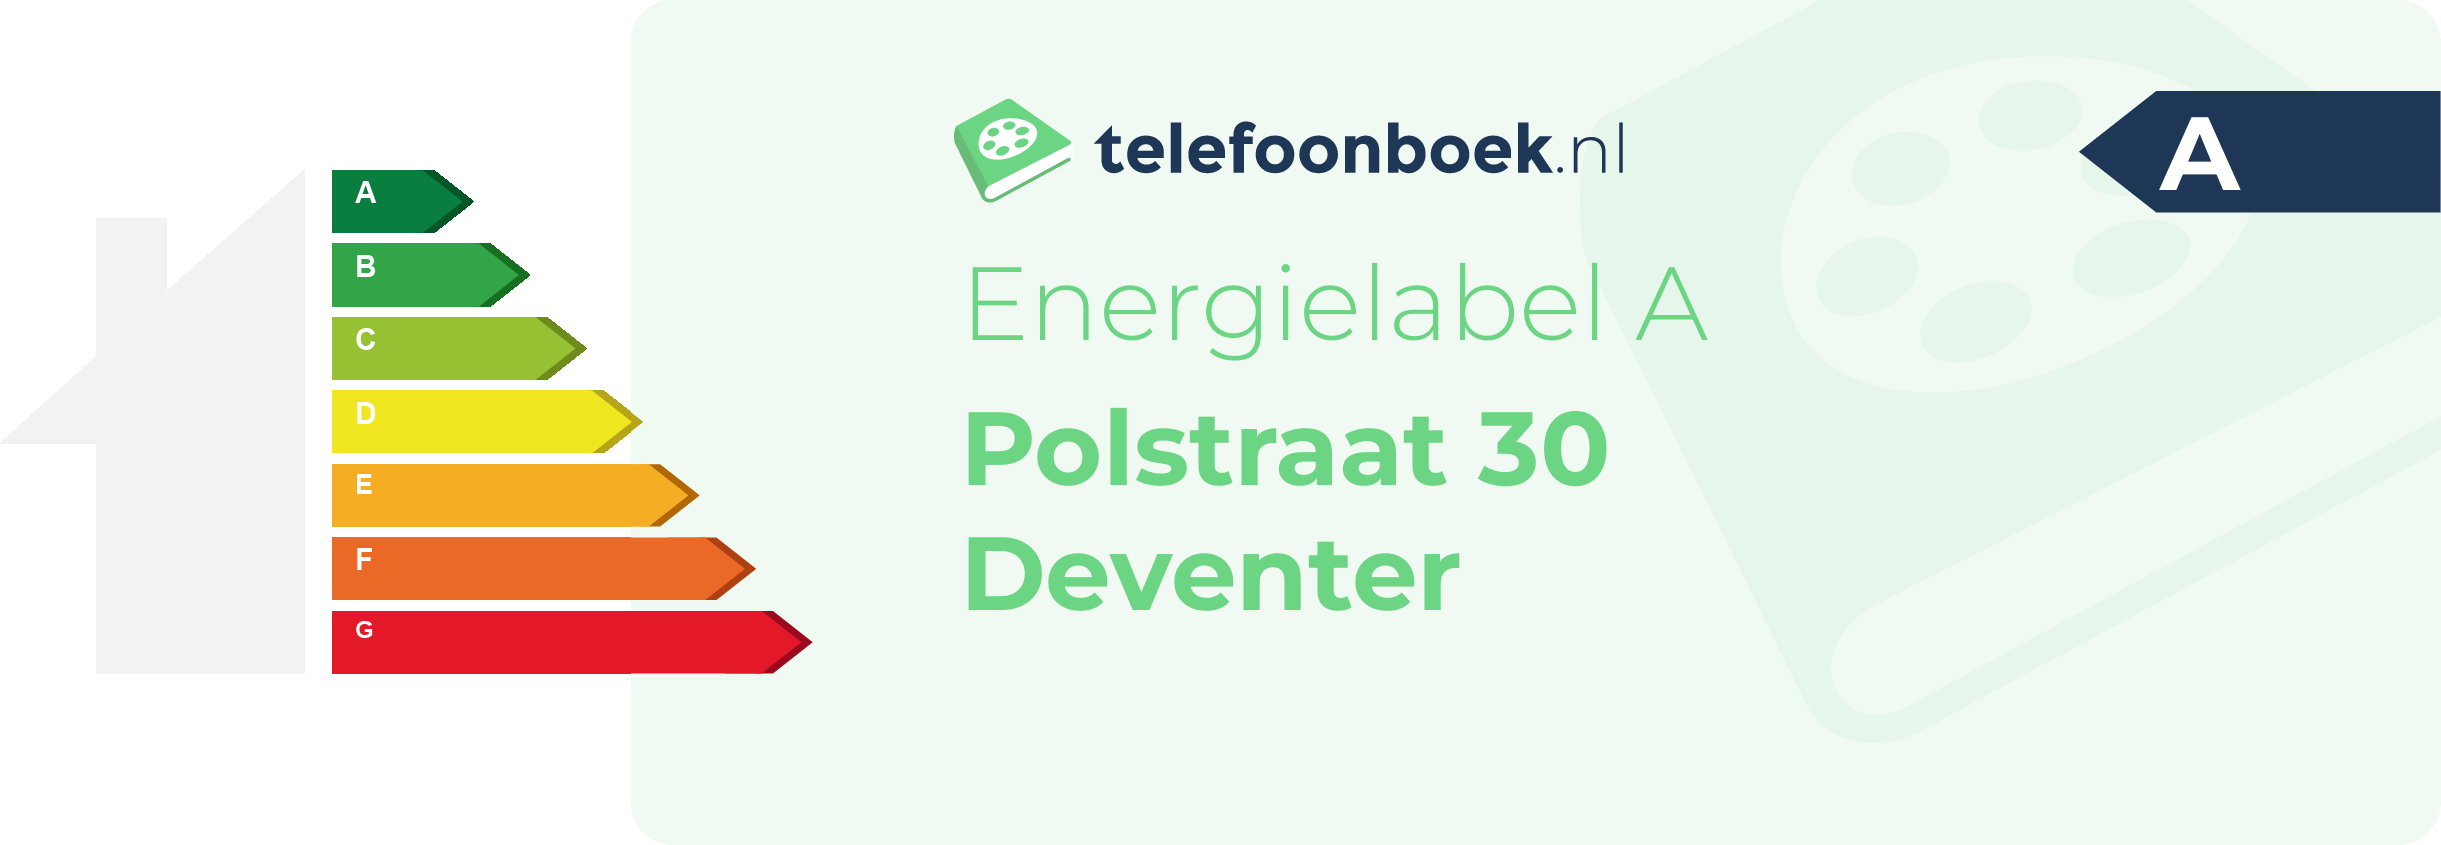 Energielabel Polstraat 30 Deventer